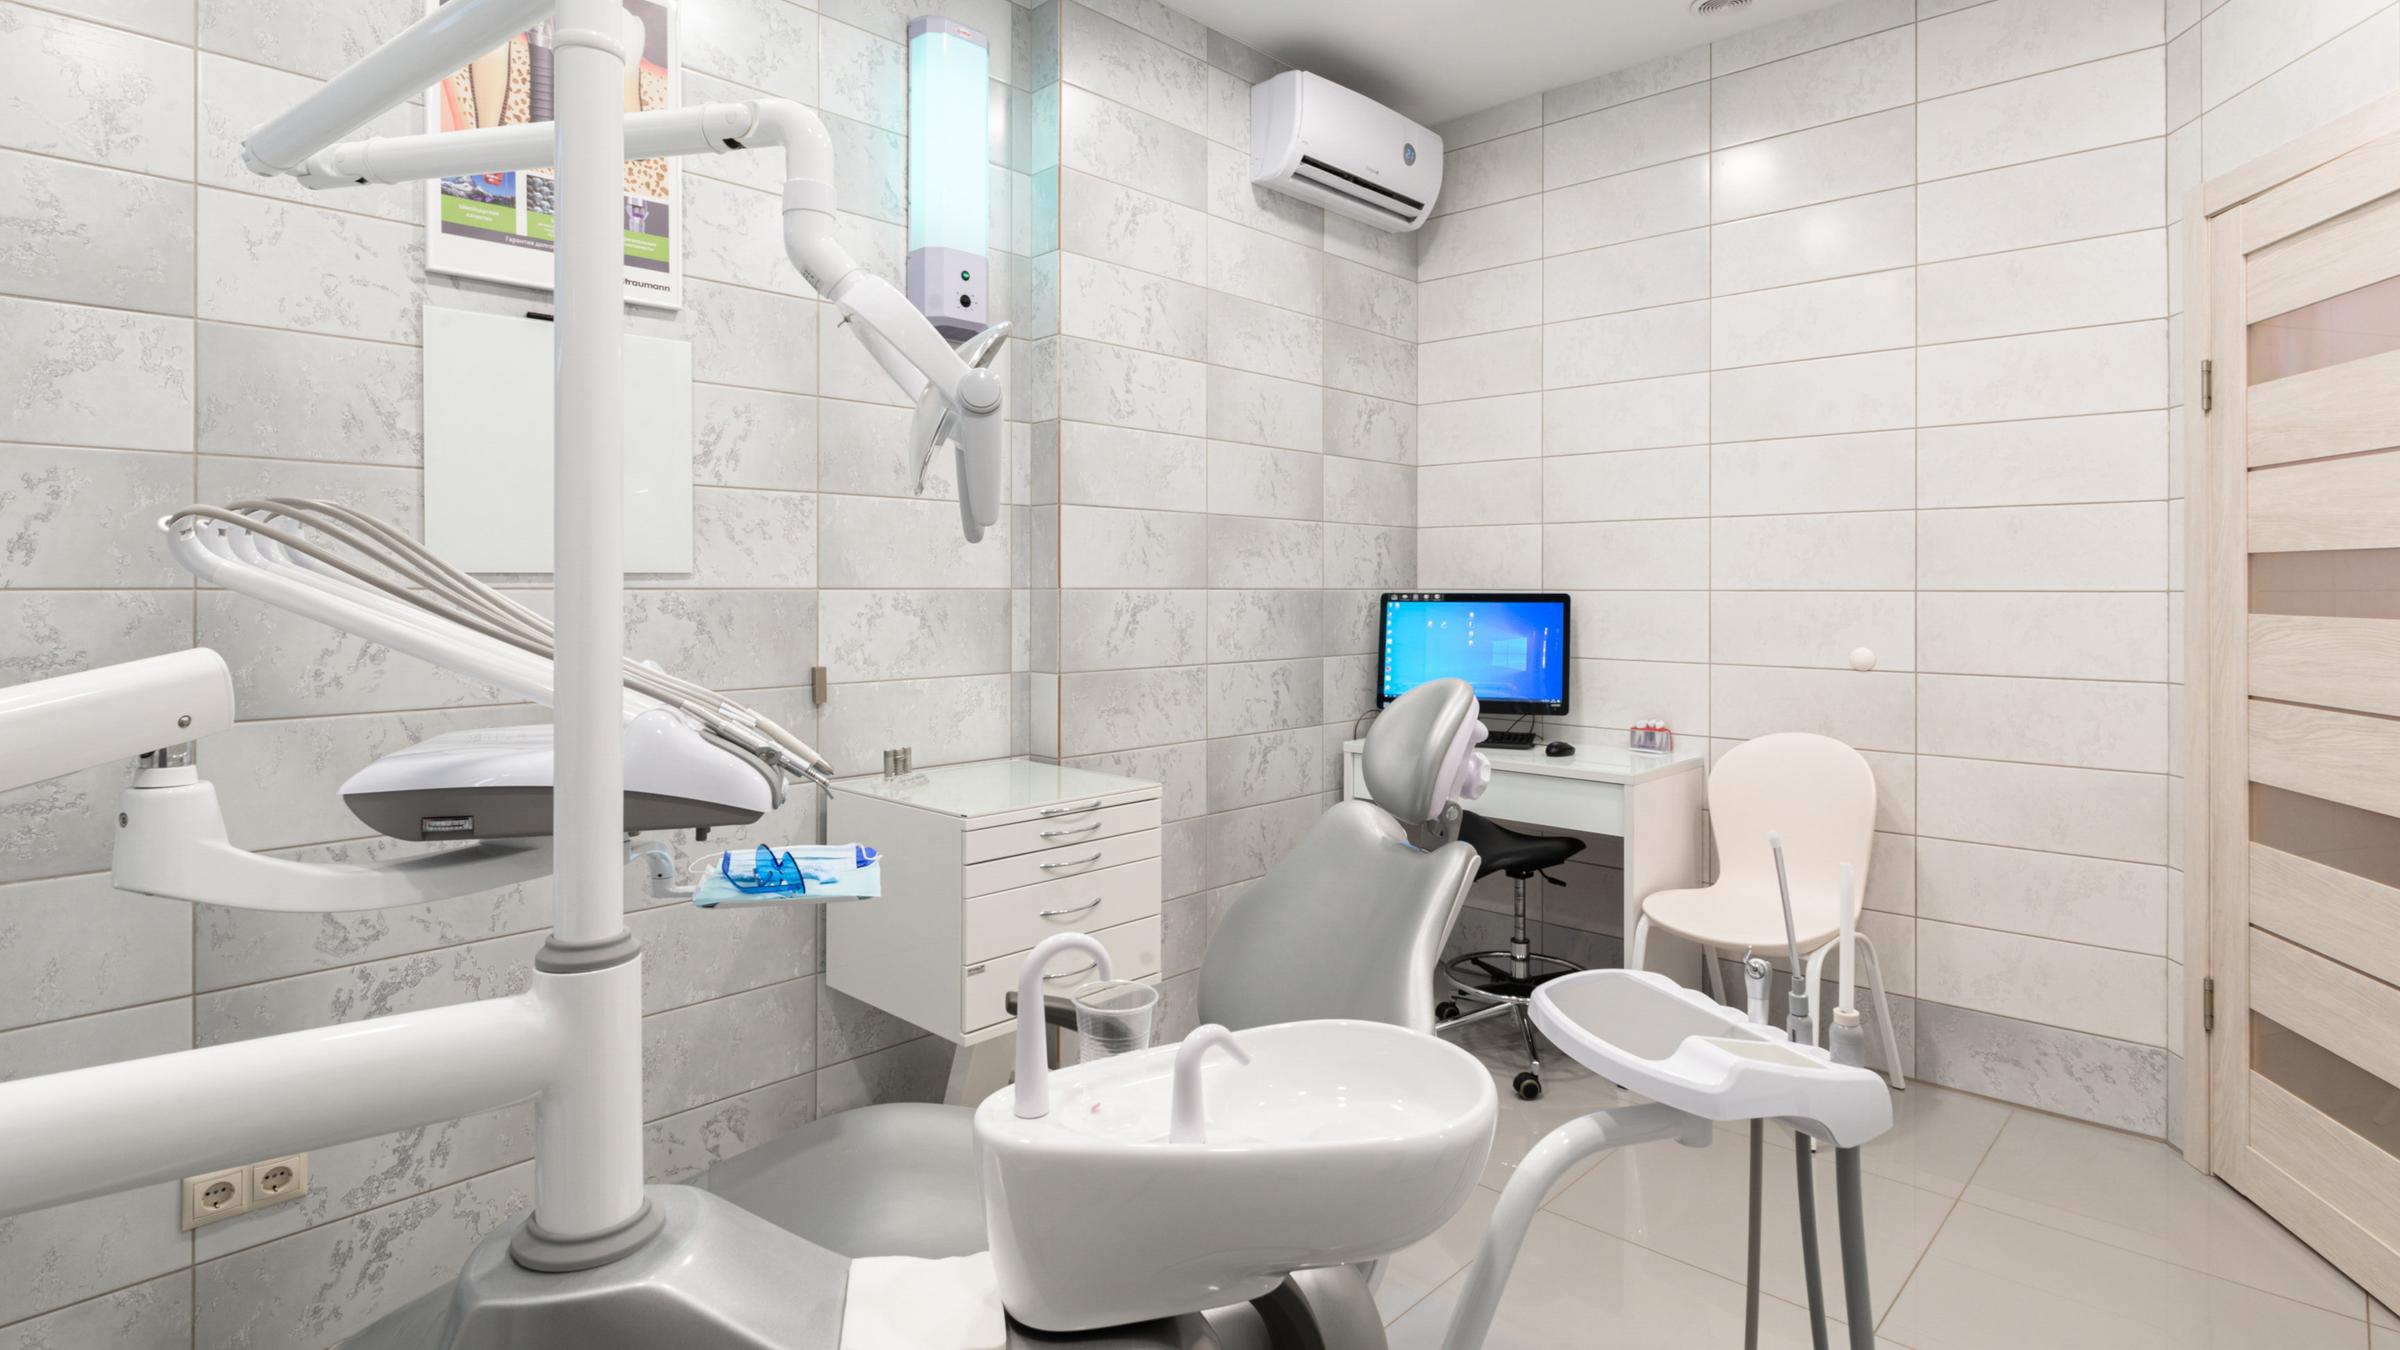 Оренбург стоматология арендовать стоматологический кабинет по часам